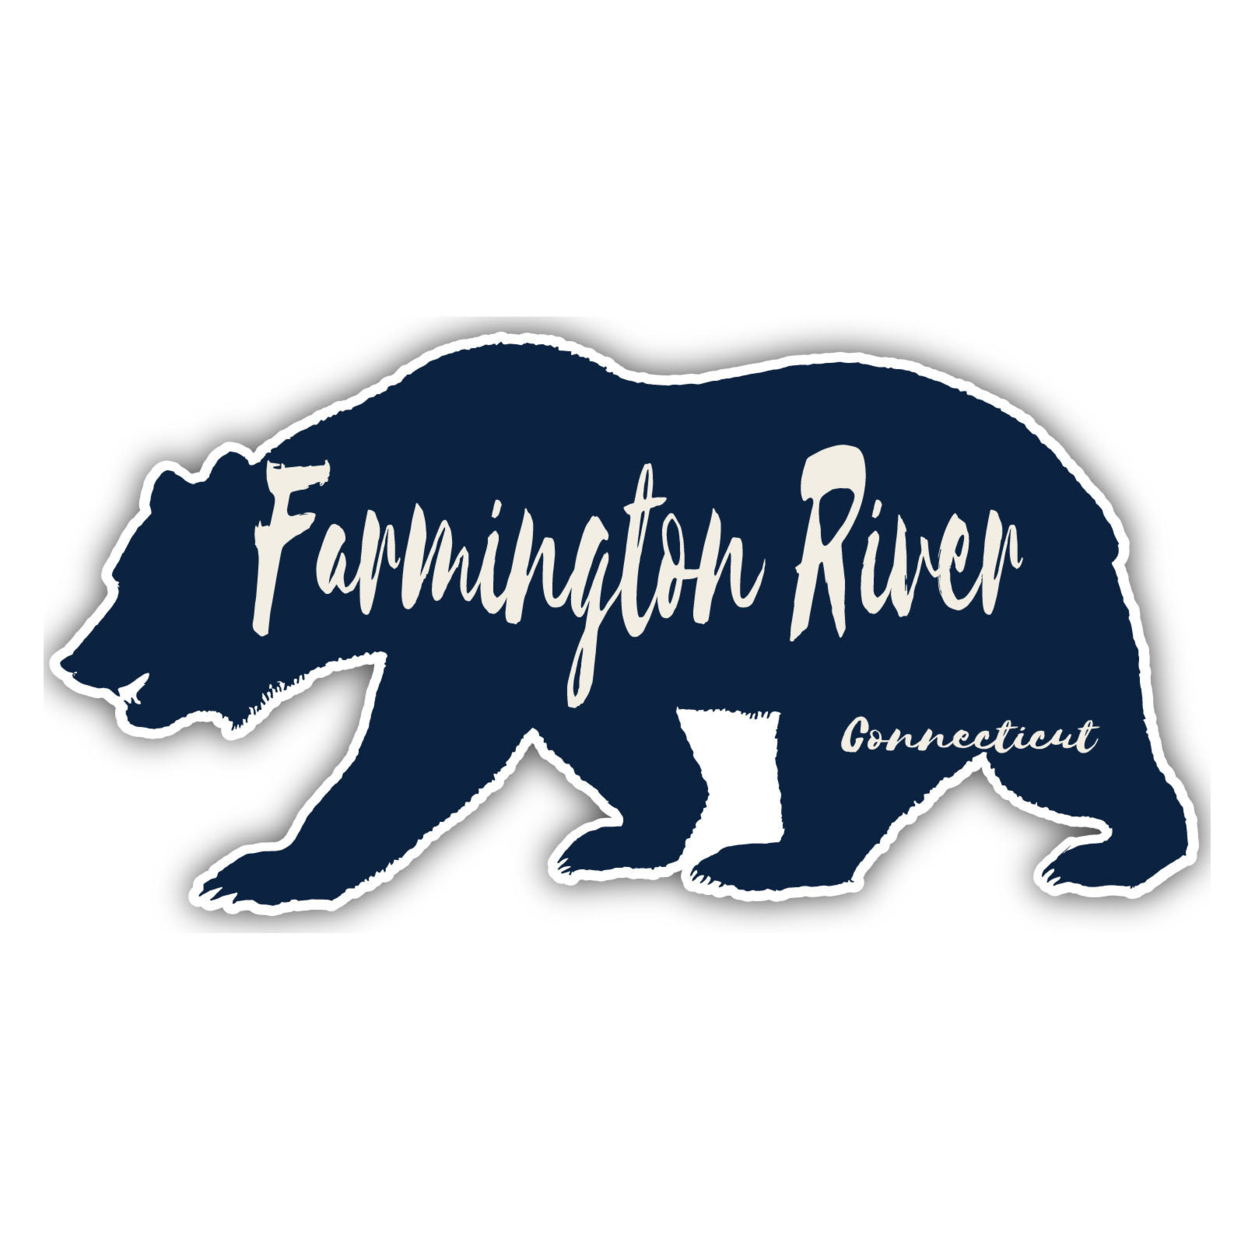 Farmington River Connecticut Souvenir Decorative Stickers (Choose Theme And Size) - 4-Pack, 2-Inch, Bear